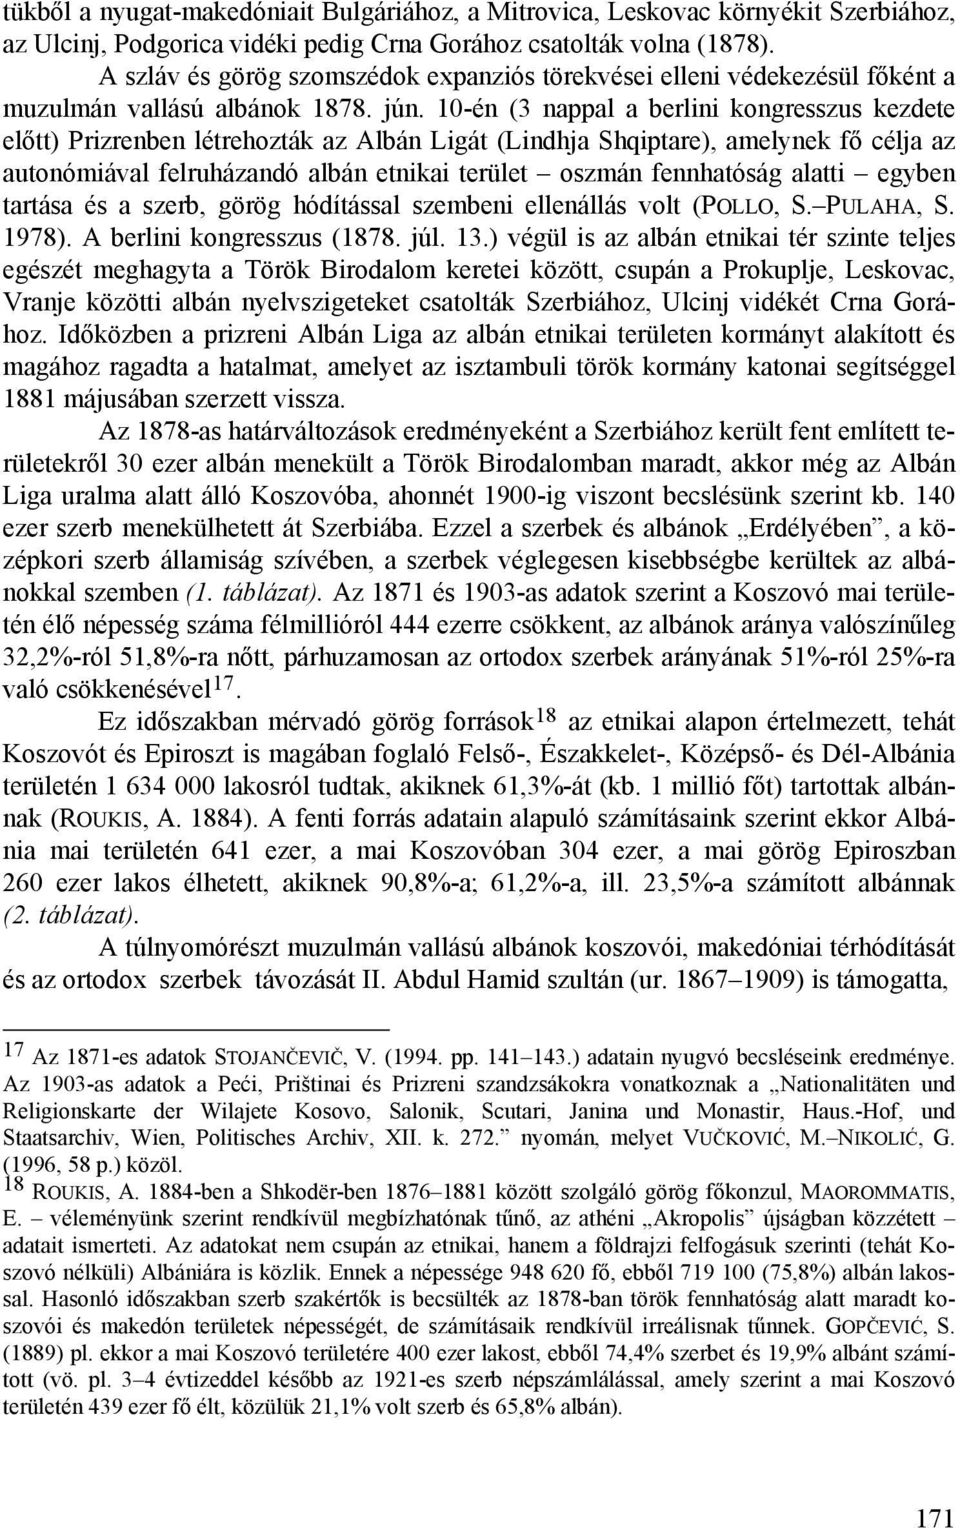 10-én (3 nappal a berlini kongresszus kezdete előtt) Prizrenben létrehozták az Albán Ligát (Lindhja Shqiptare), amelynek fő célja az autonómiával felruházandó albán etnikai terület oszmán fennhatóság